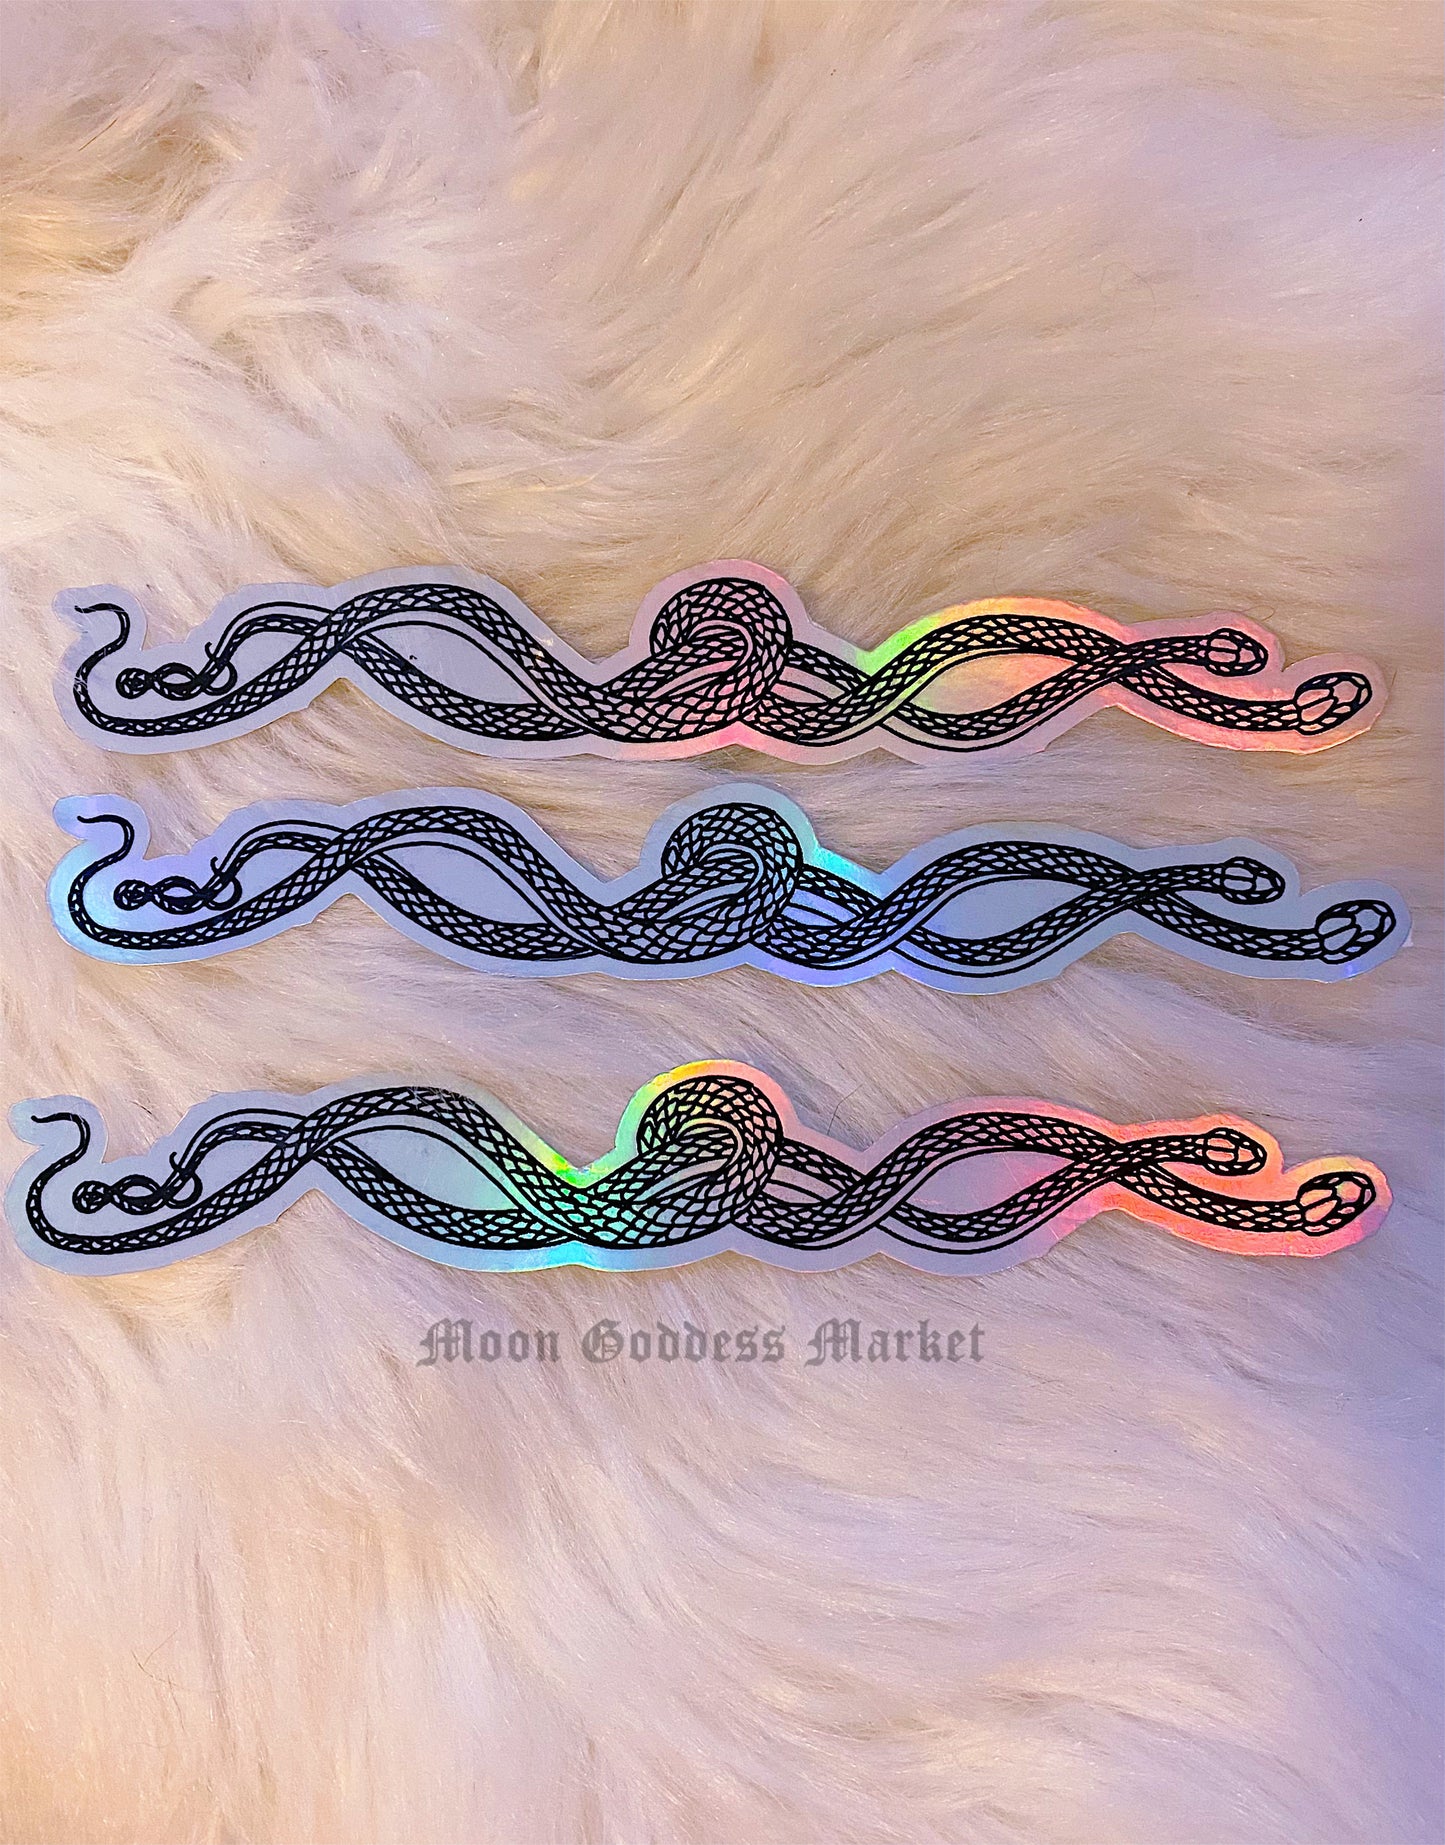 Large Serpent Sticker 7” x 1” - Moon Goddess Market